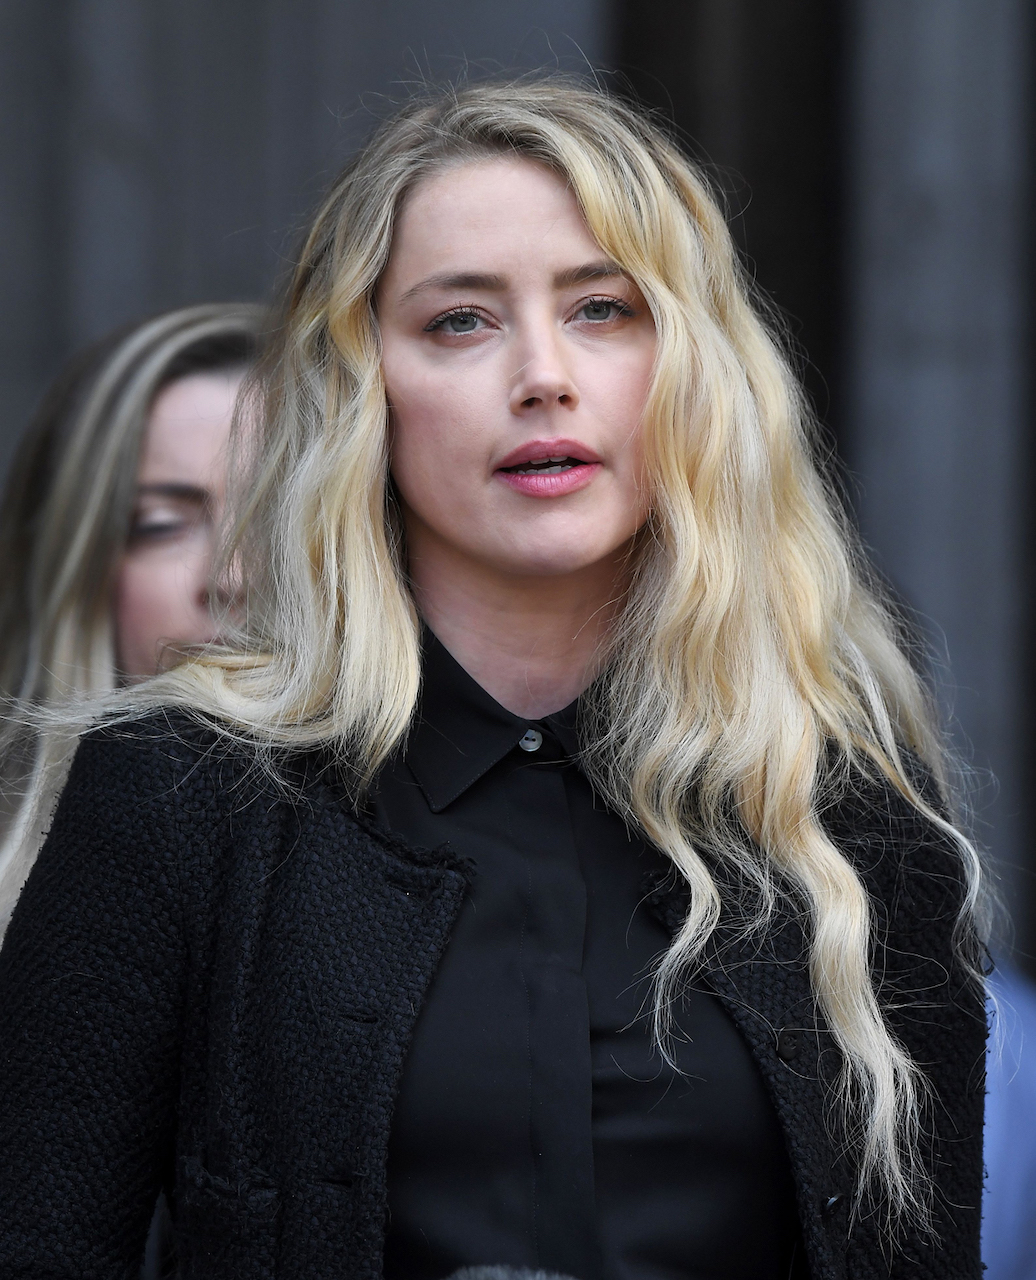 As pessoas adoram bajular homens poderosos“, diz Amber Heard em depoimento  final